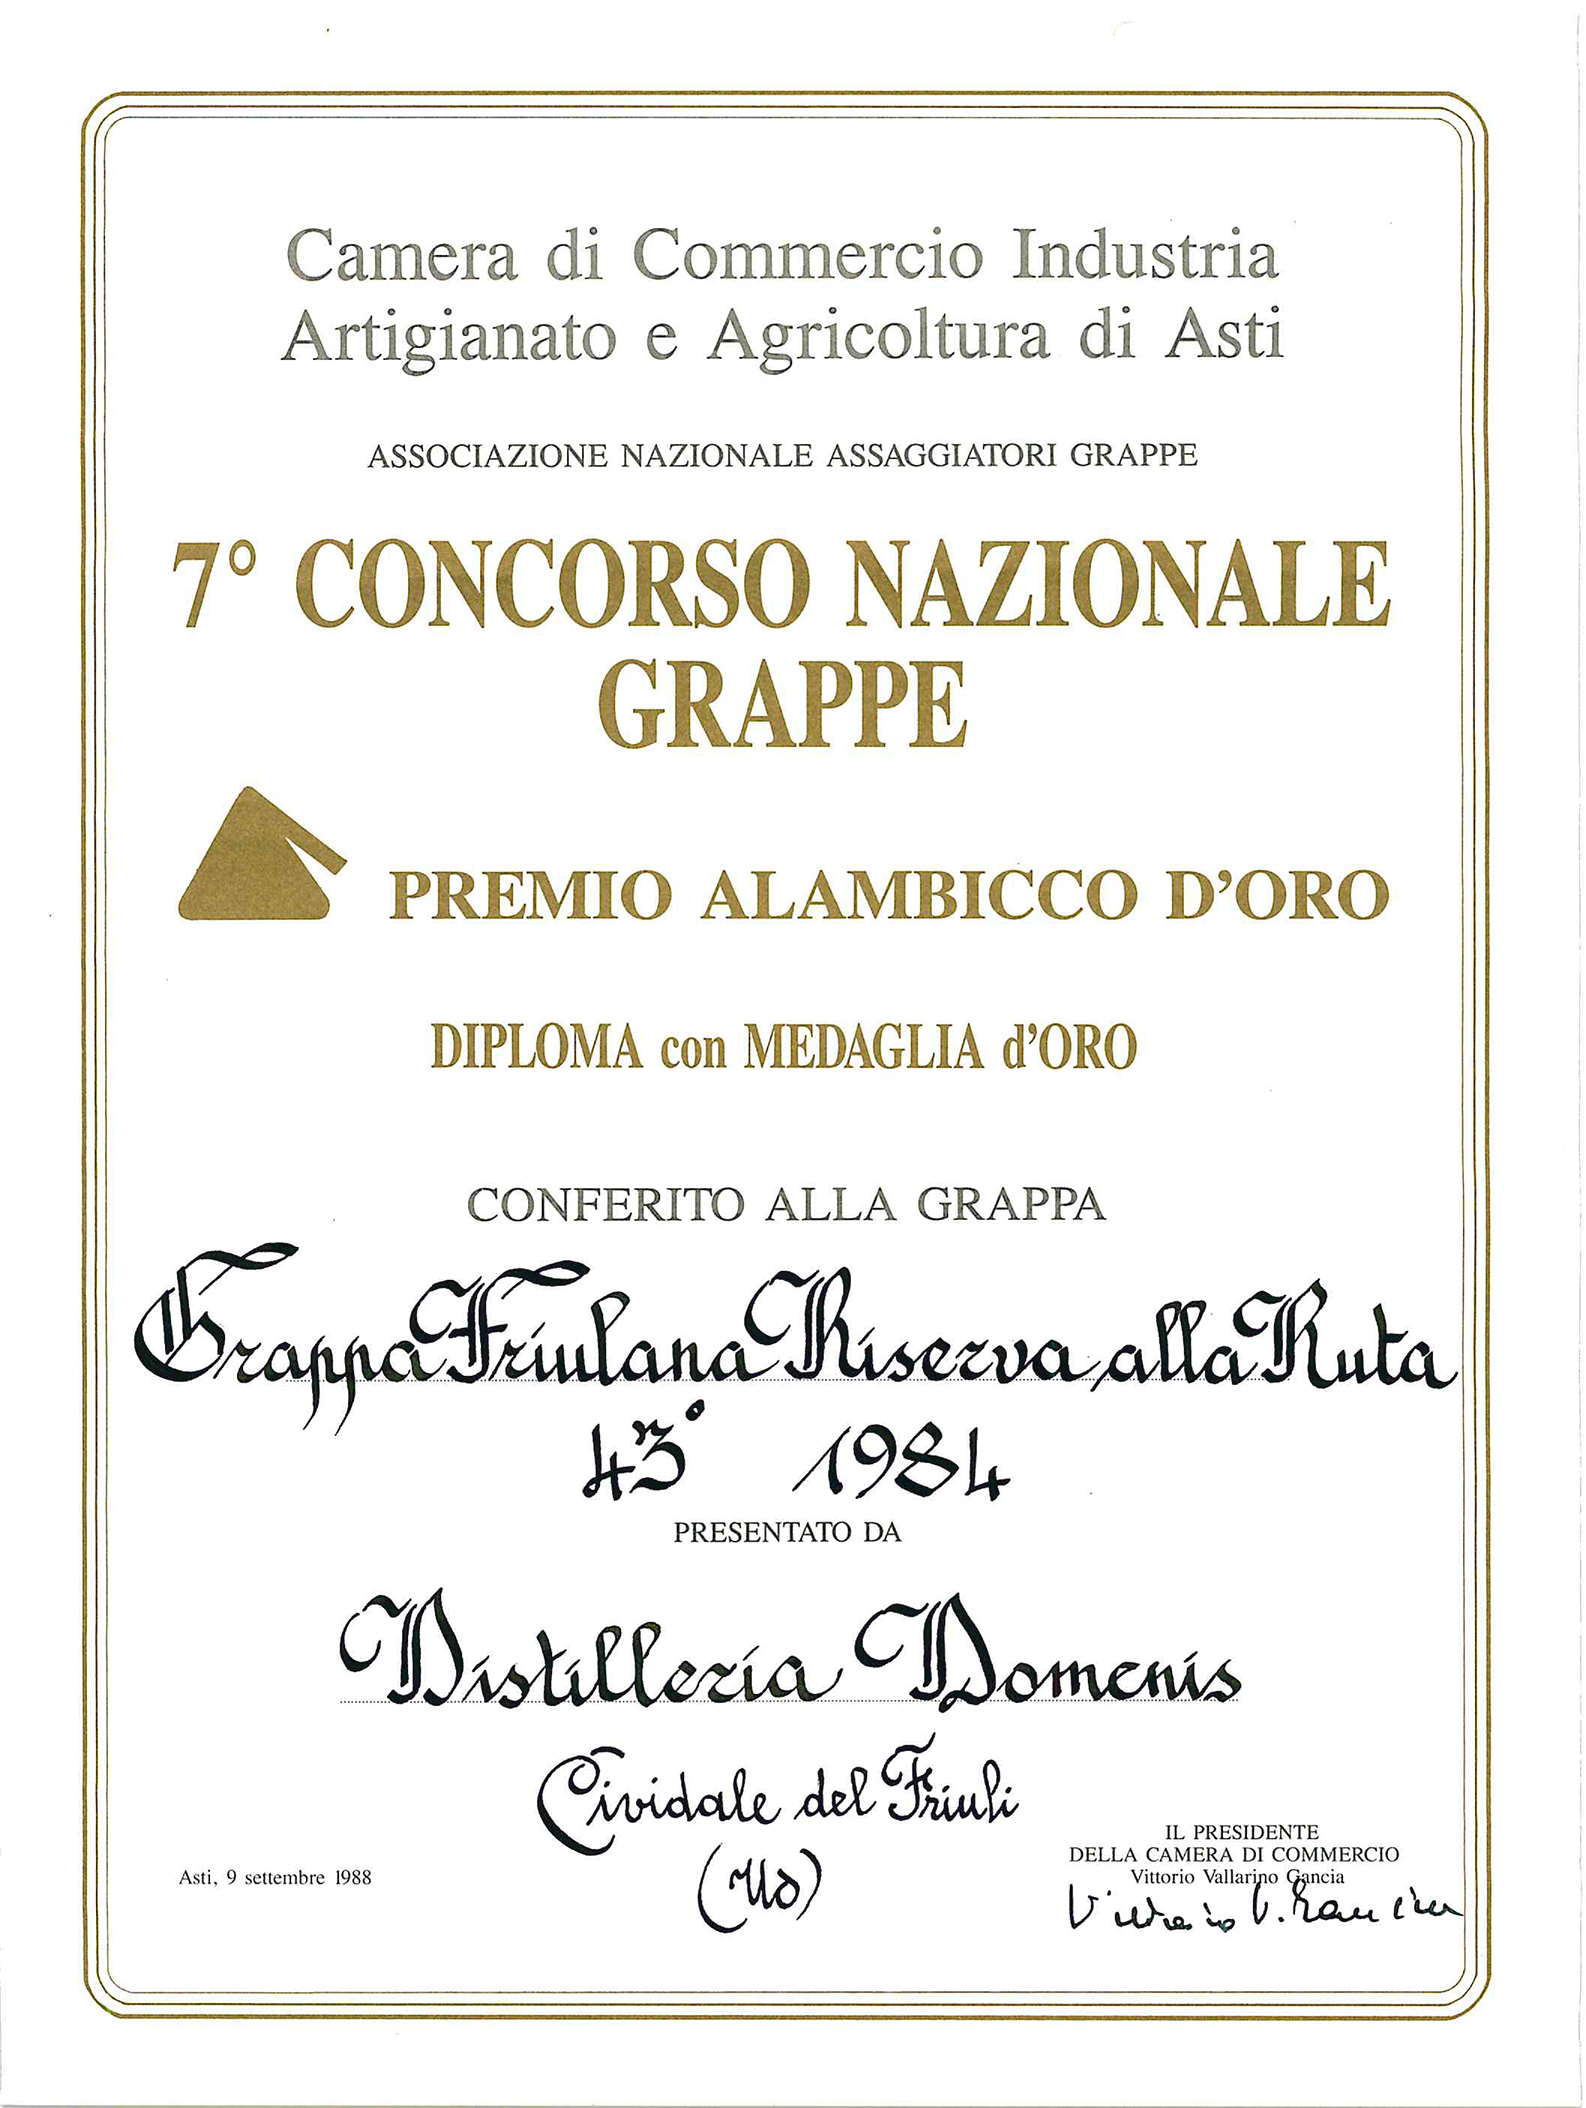 Premio Alambicco d’Oro 1988 – Grappa Friulana Riserva alla Ruta 43° 1984